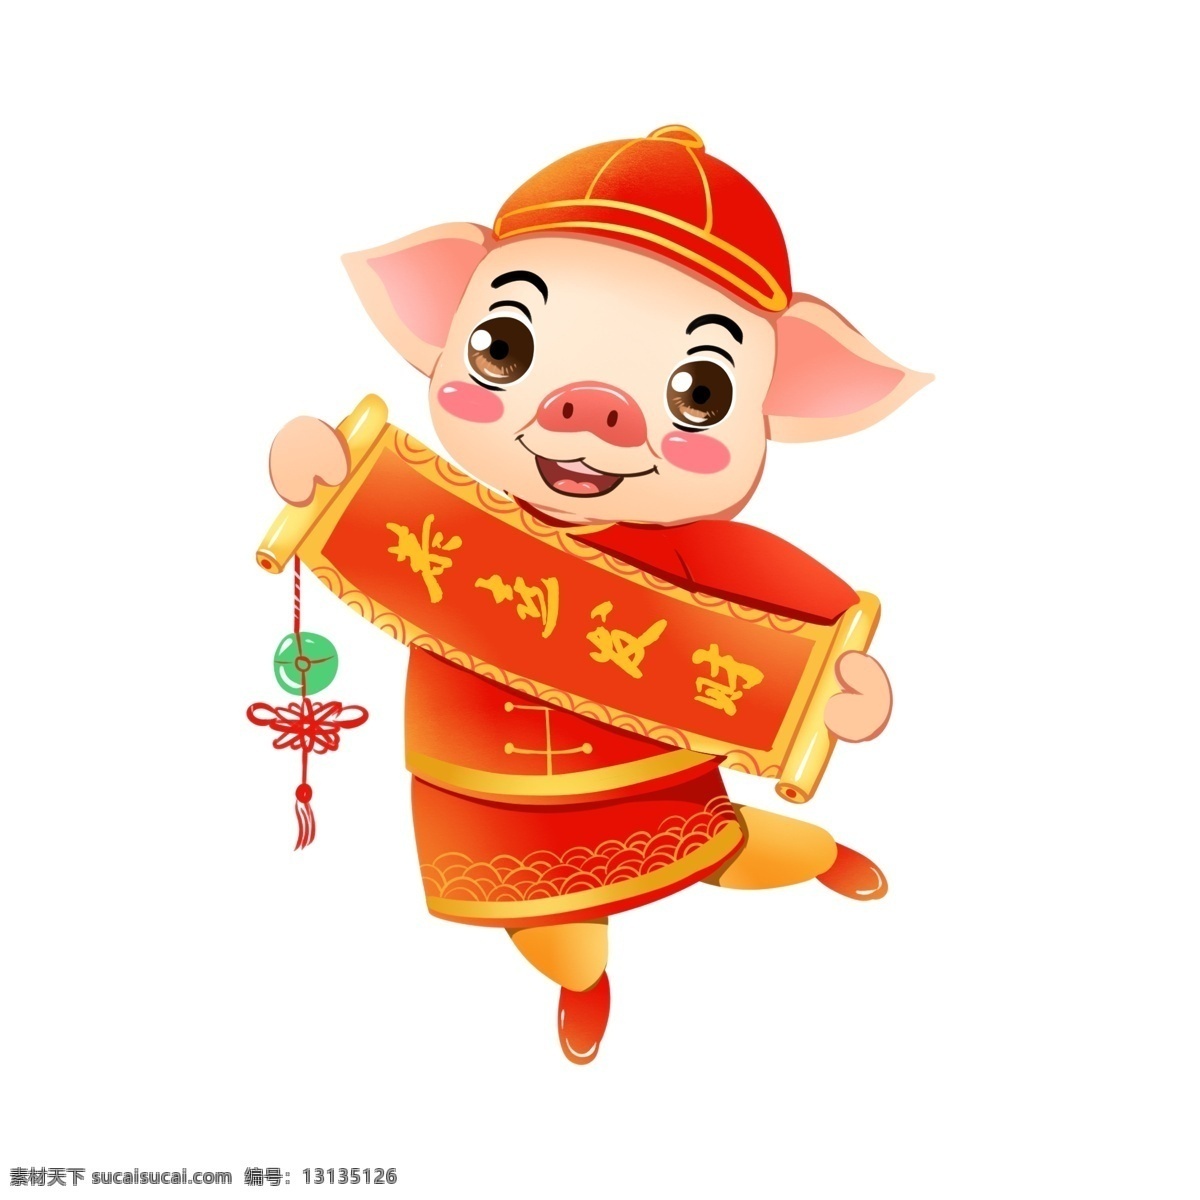 2019 春节 猪年 贴 对联 生肖 猪 可爱 喜庆 商用 原创 手绘 插画 ip 形象 元素 贴对联 中国风